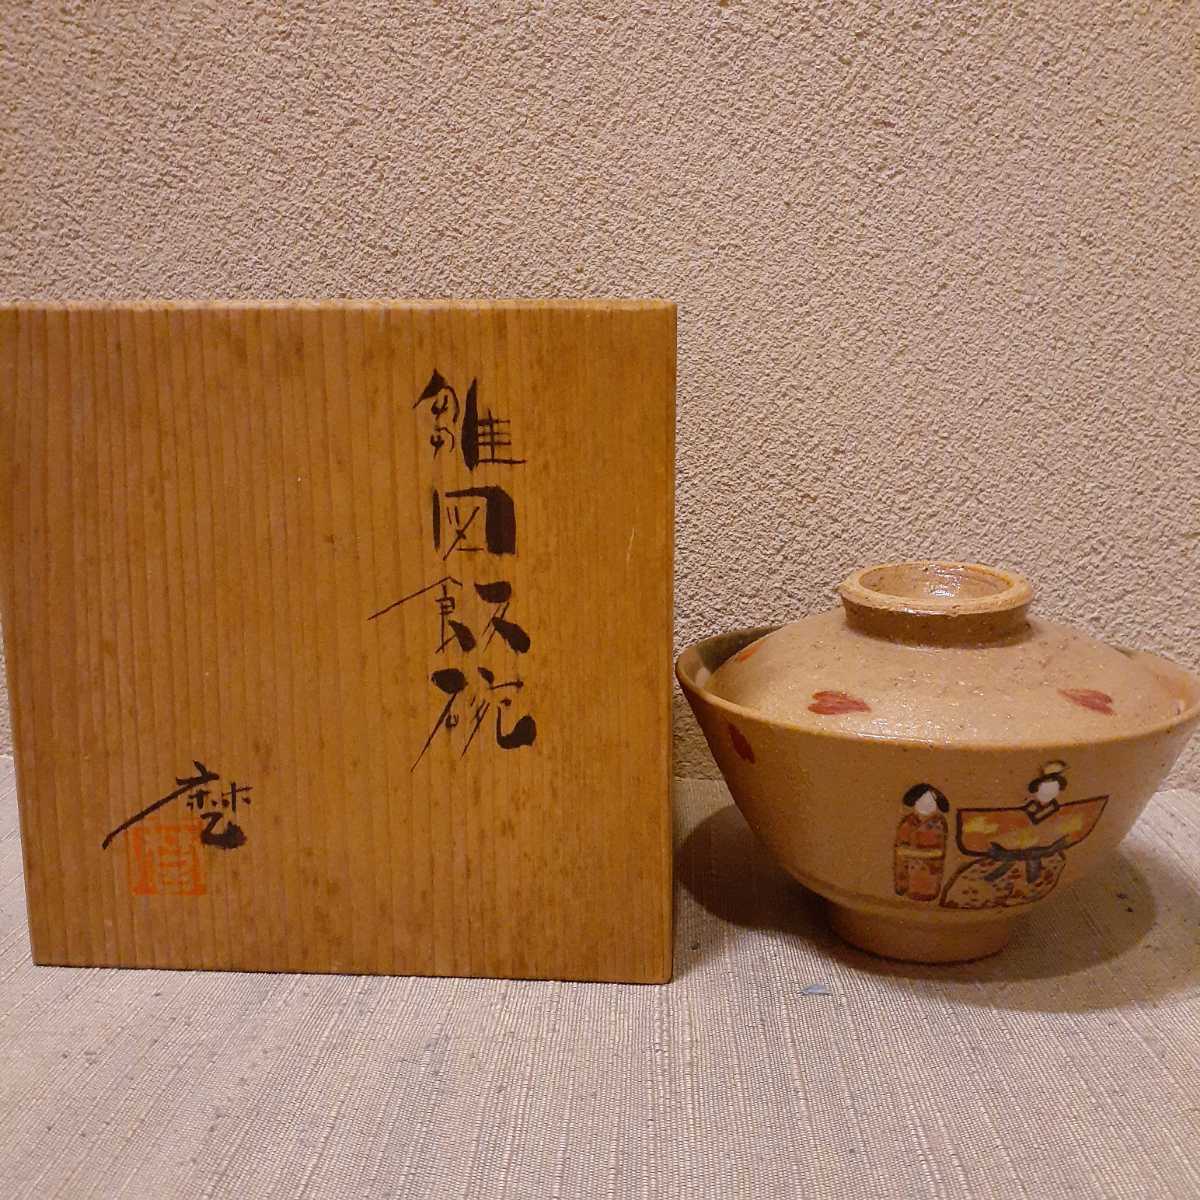 وعاء الشاي لدمى هينا, دمى واقفة, تقريبا. 12.2 سم × 8 سم, السيراميك الياباني, السيراميك بشكل عام, آحرون